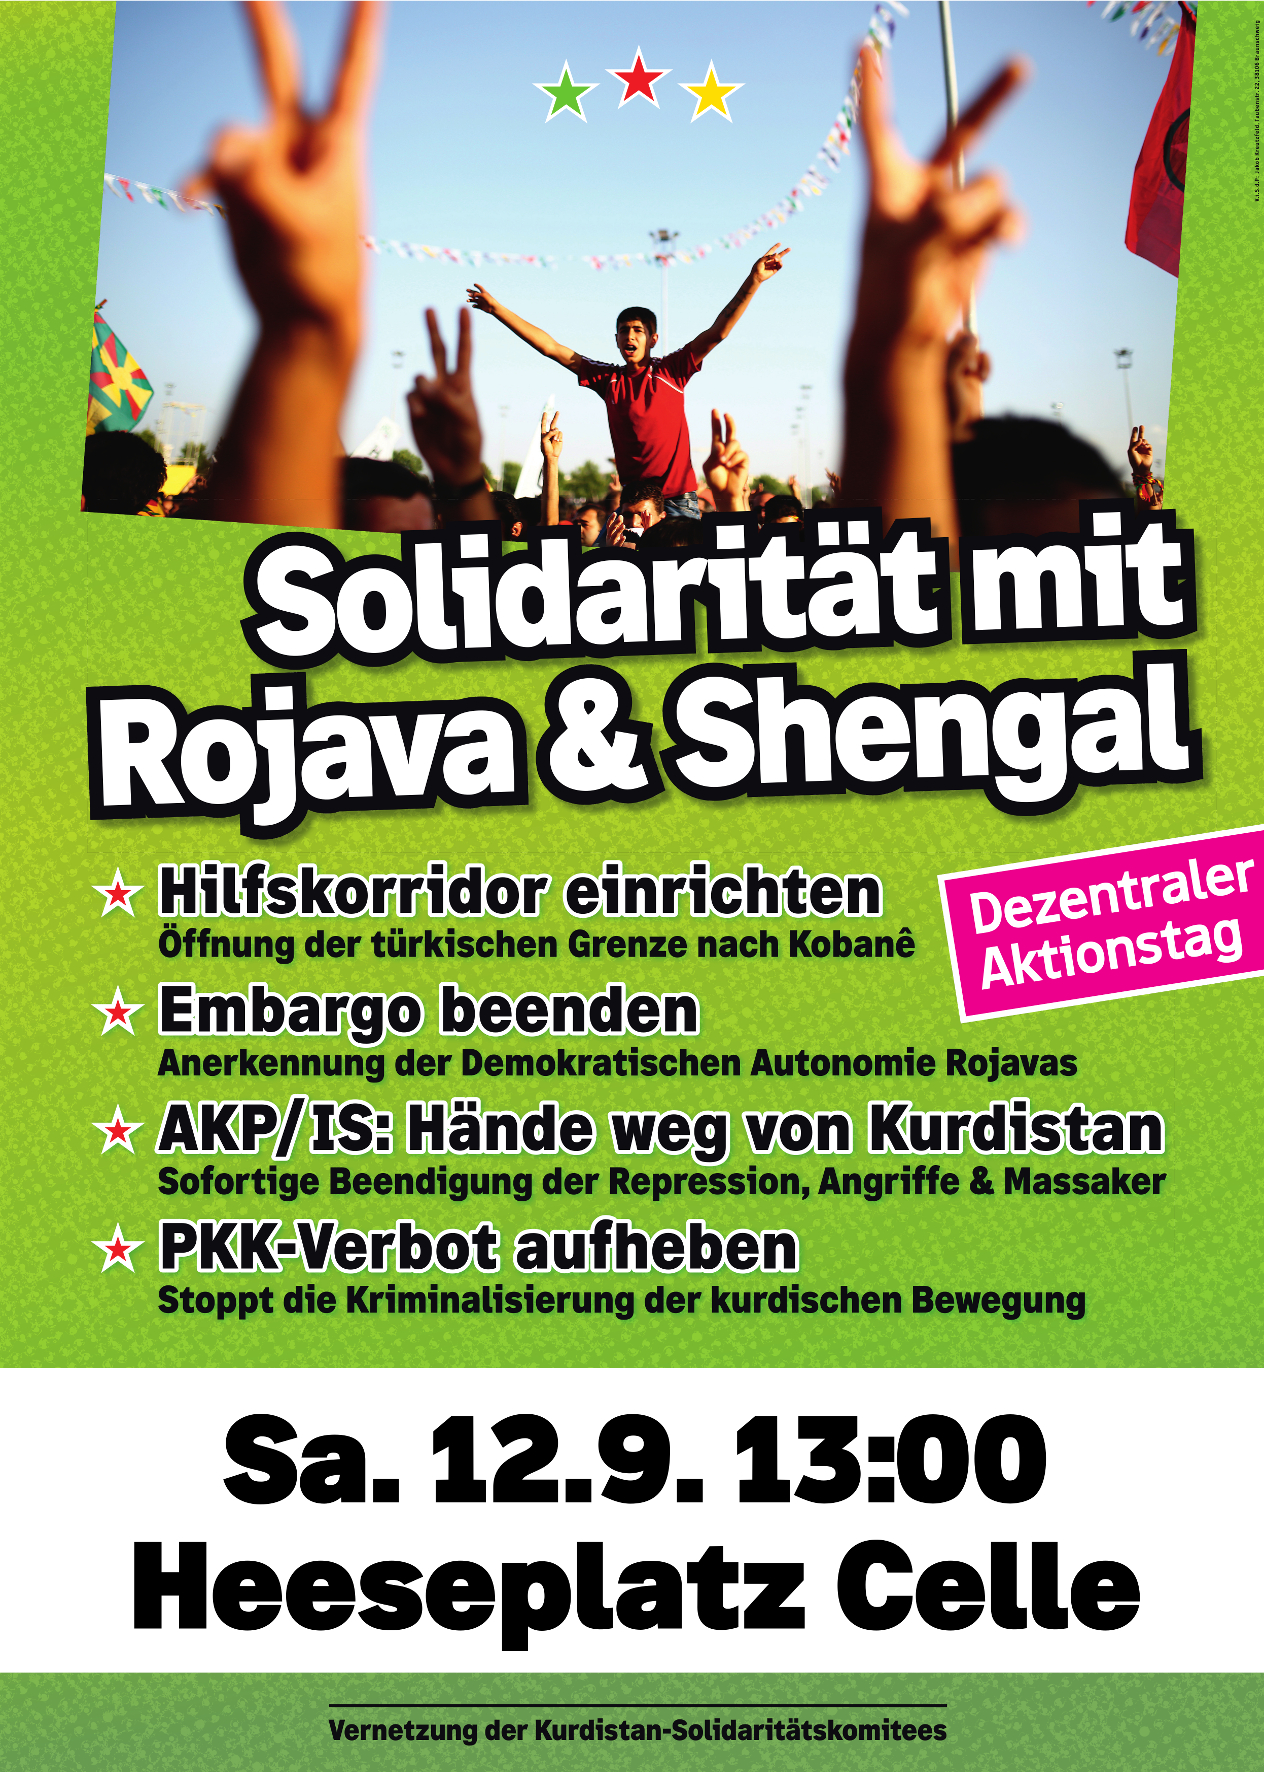 2015.09.12.extern.Rojava.Aktionstag.Heeseplatz.jpg